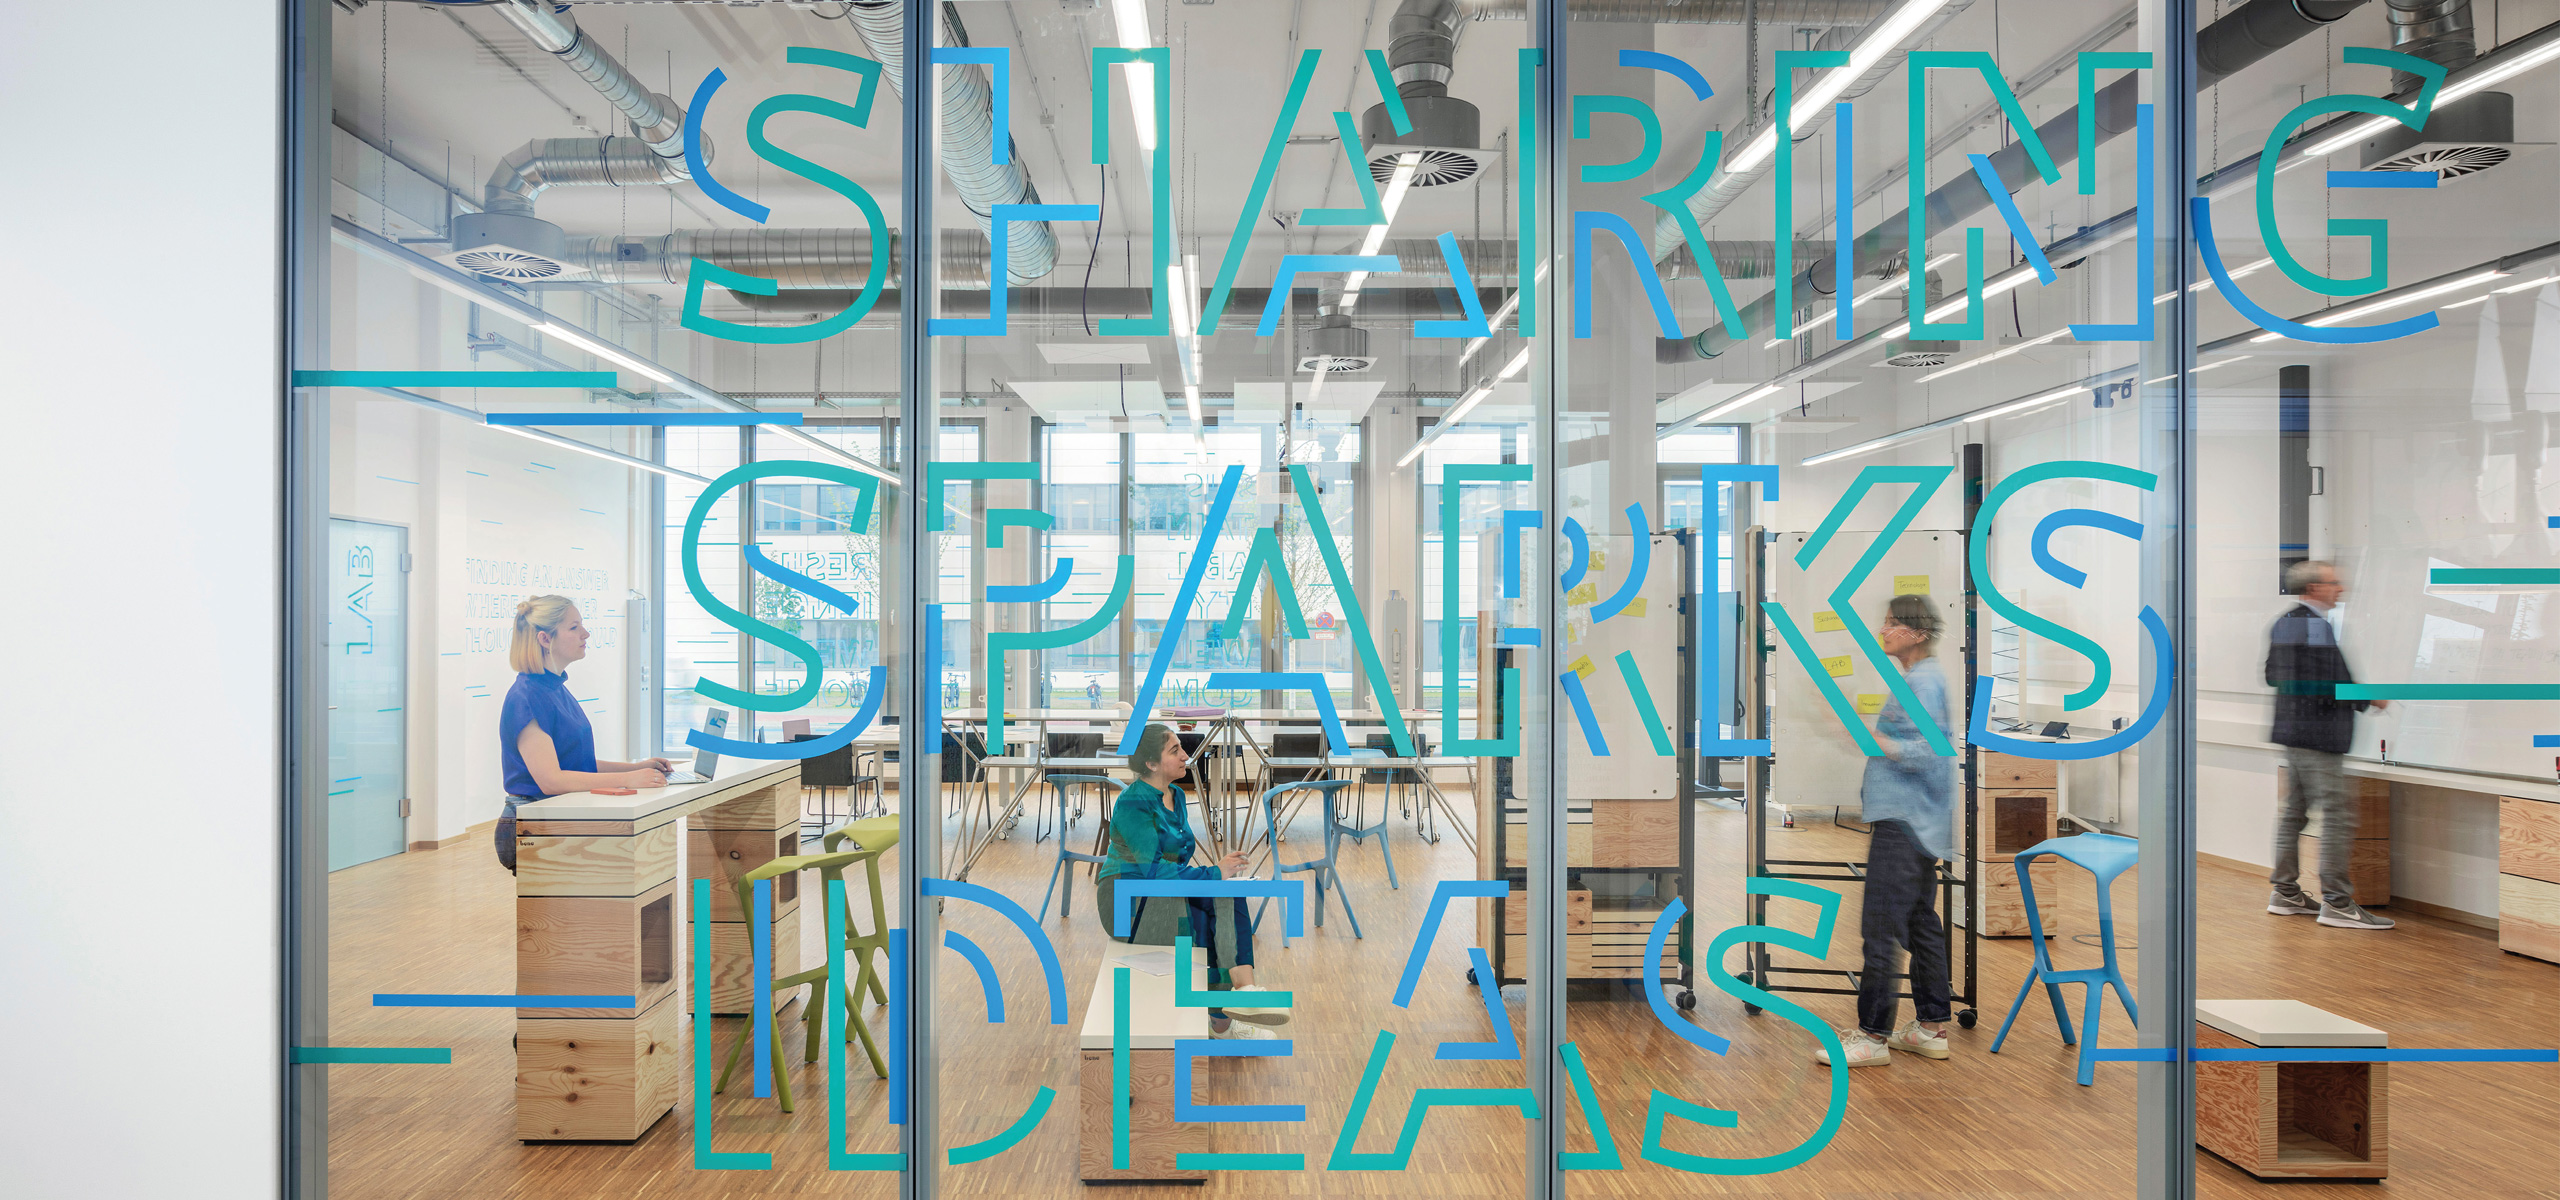 Siemens Besprechungsraum mit Verglasung verziert mit typografischen Elementen in blau und grün